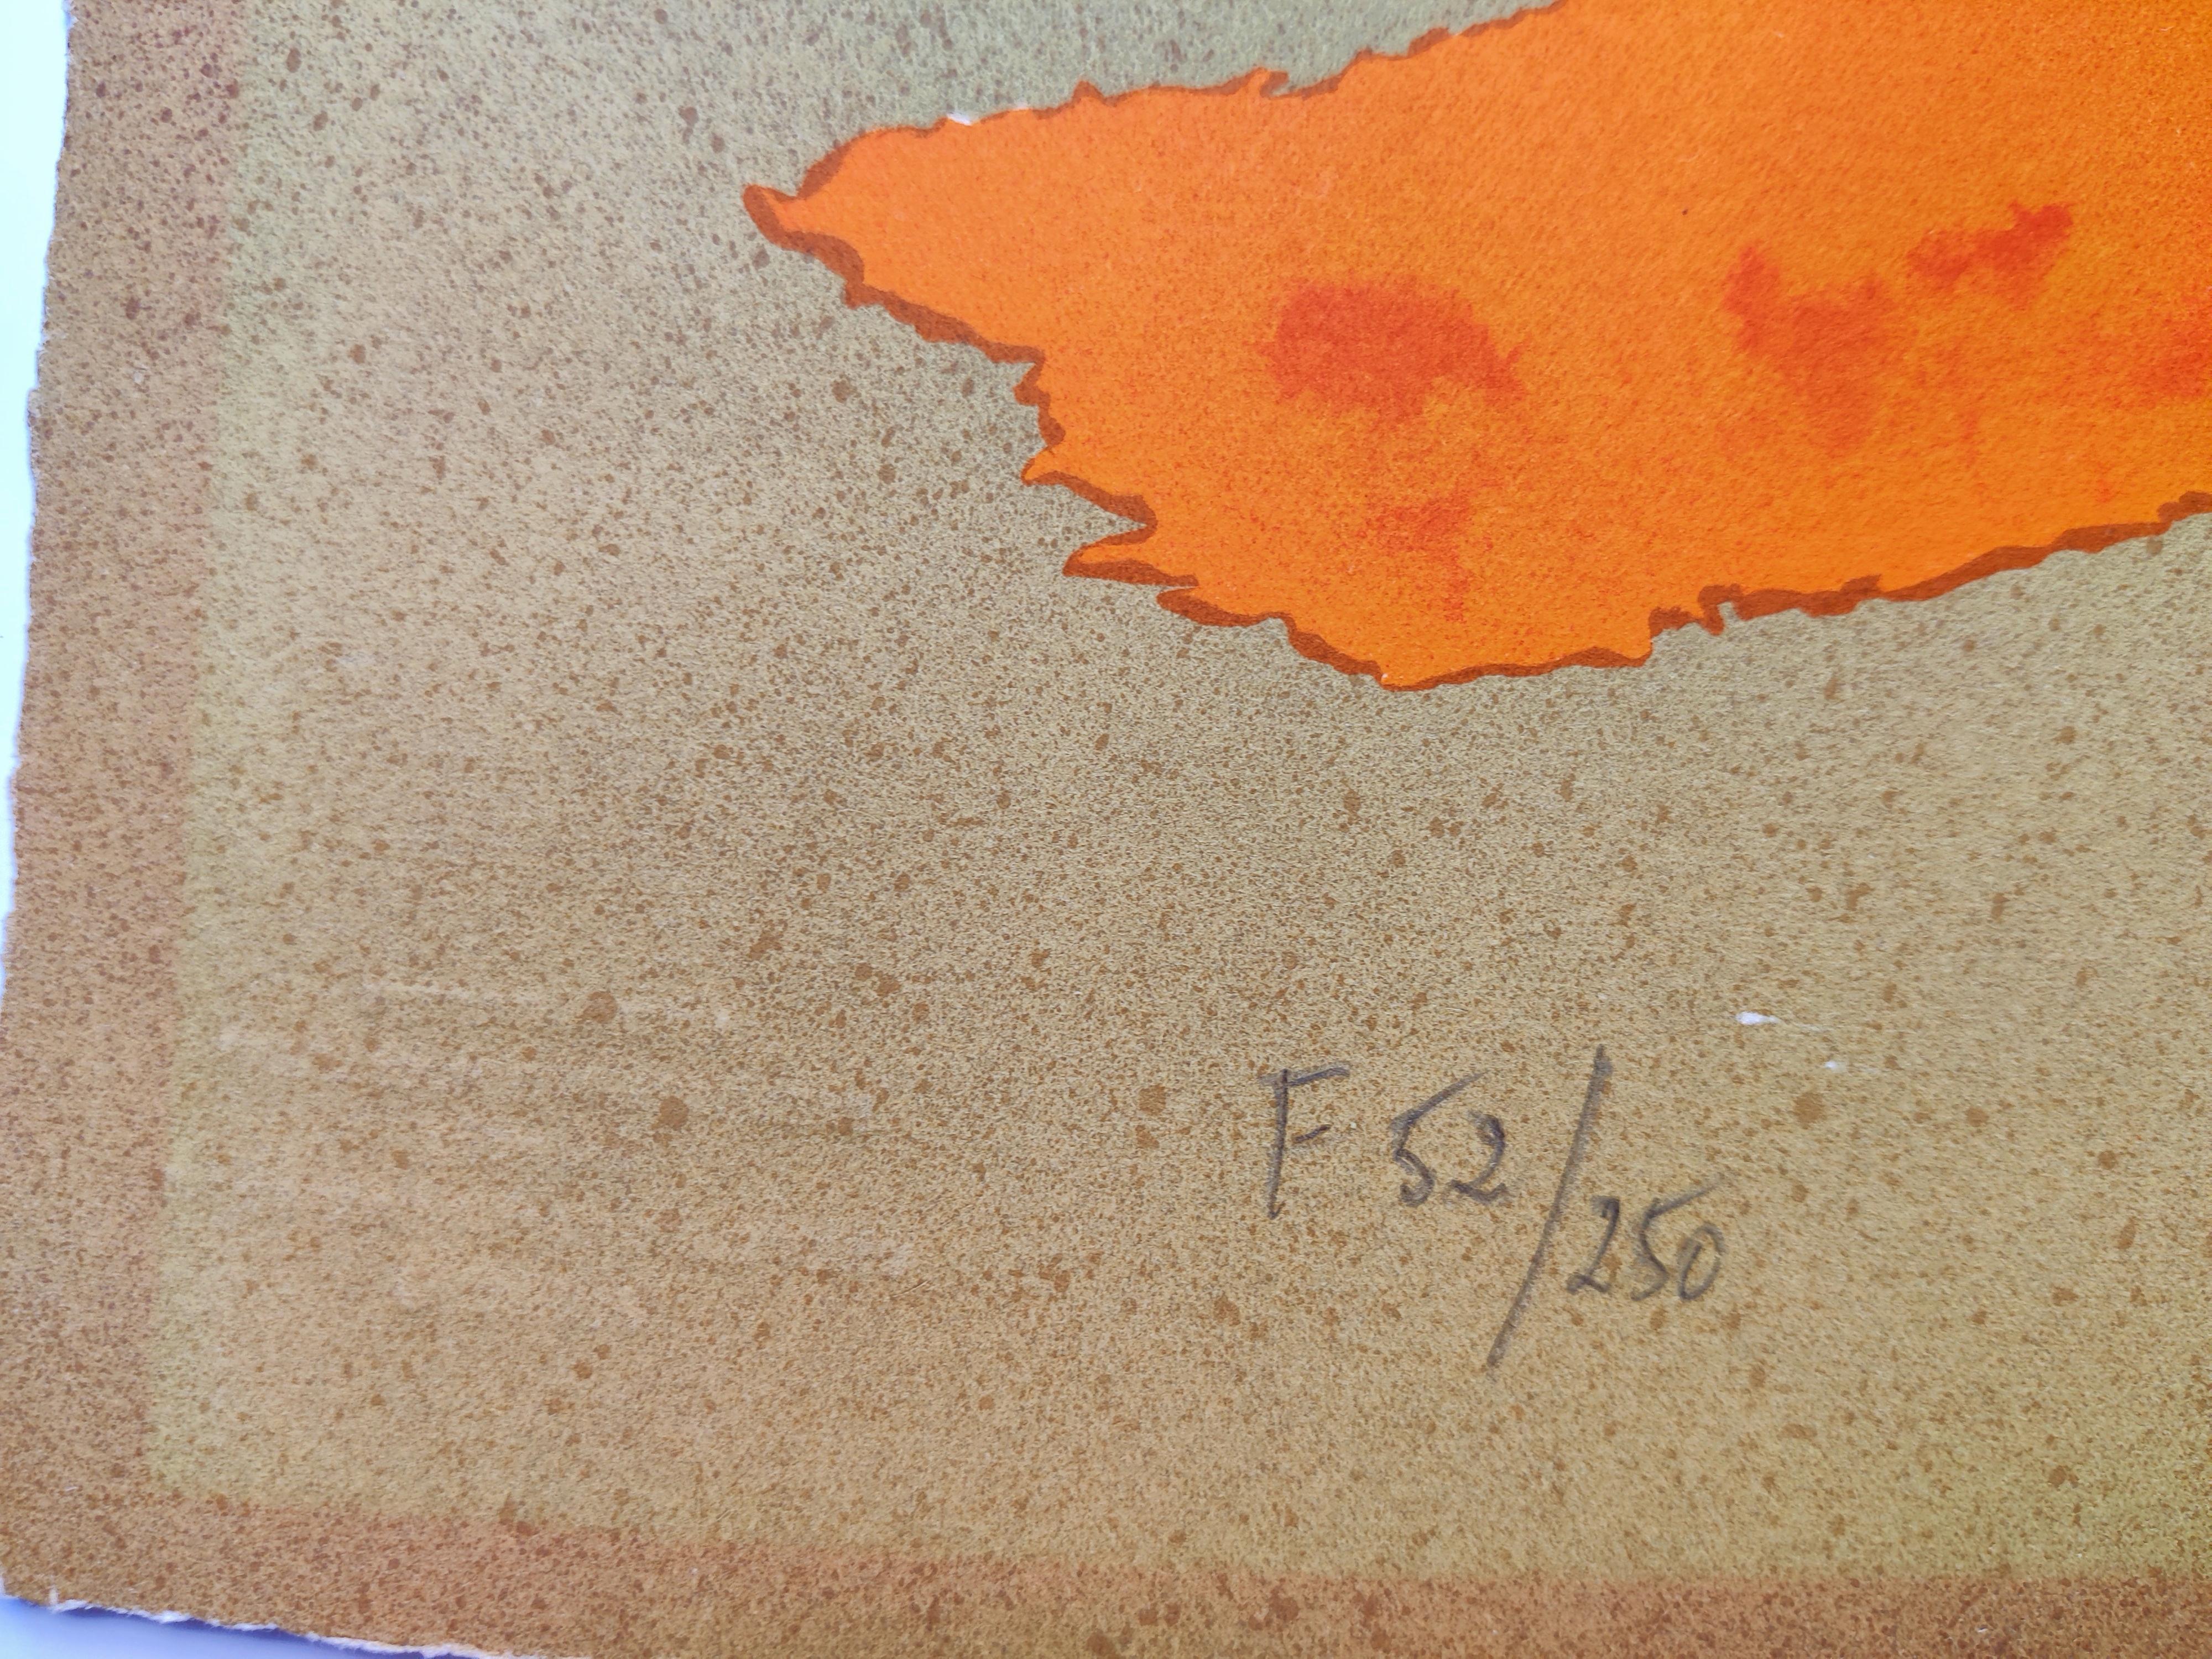 D'après Pablo Picasso - Les Portraits Imaginaires 1969
Lithographie couleur
Taille 655x500 mm
Edition F52 / 250 pour la France au crayon, en bas à gauche
Imprimé par Marcel Salinas. 
Publié par Harry N. Abrams, Inc., New York